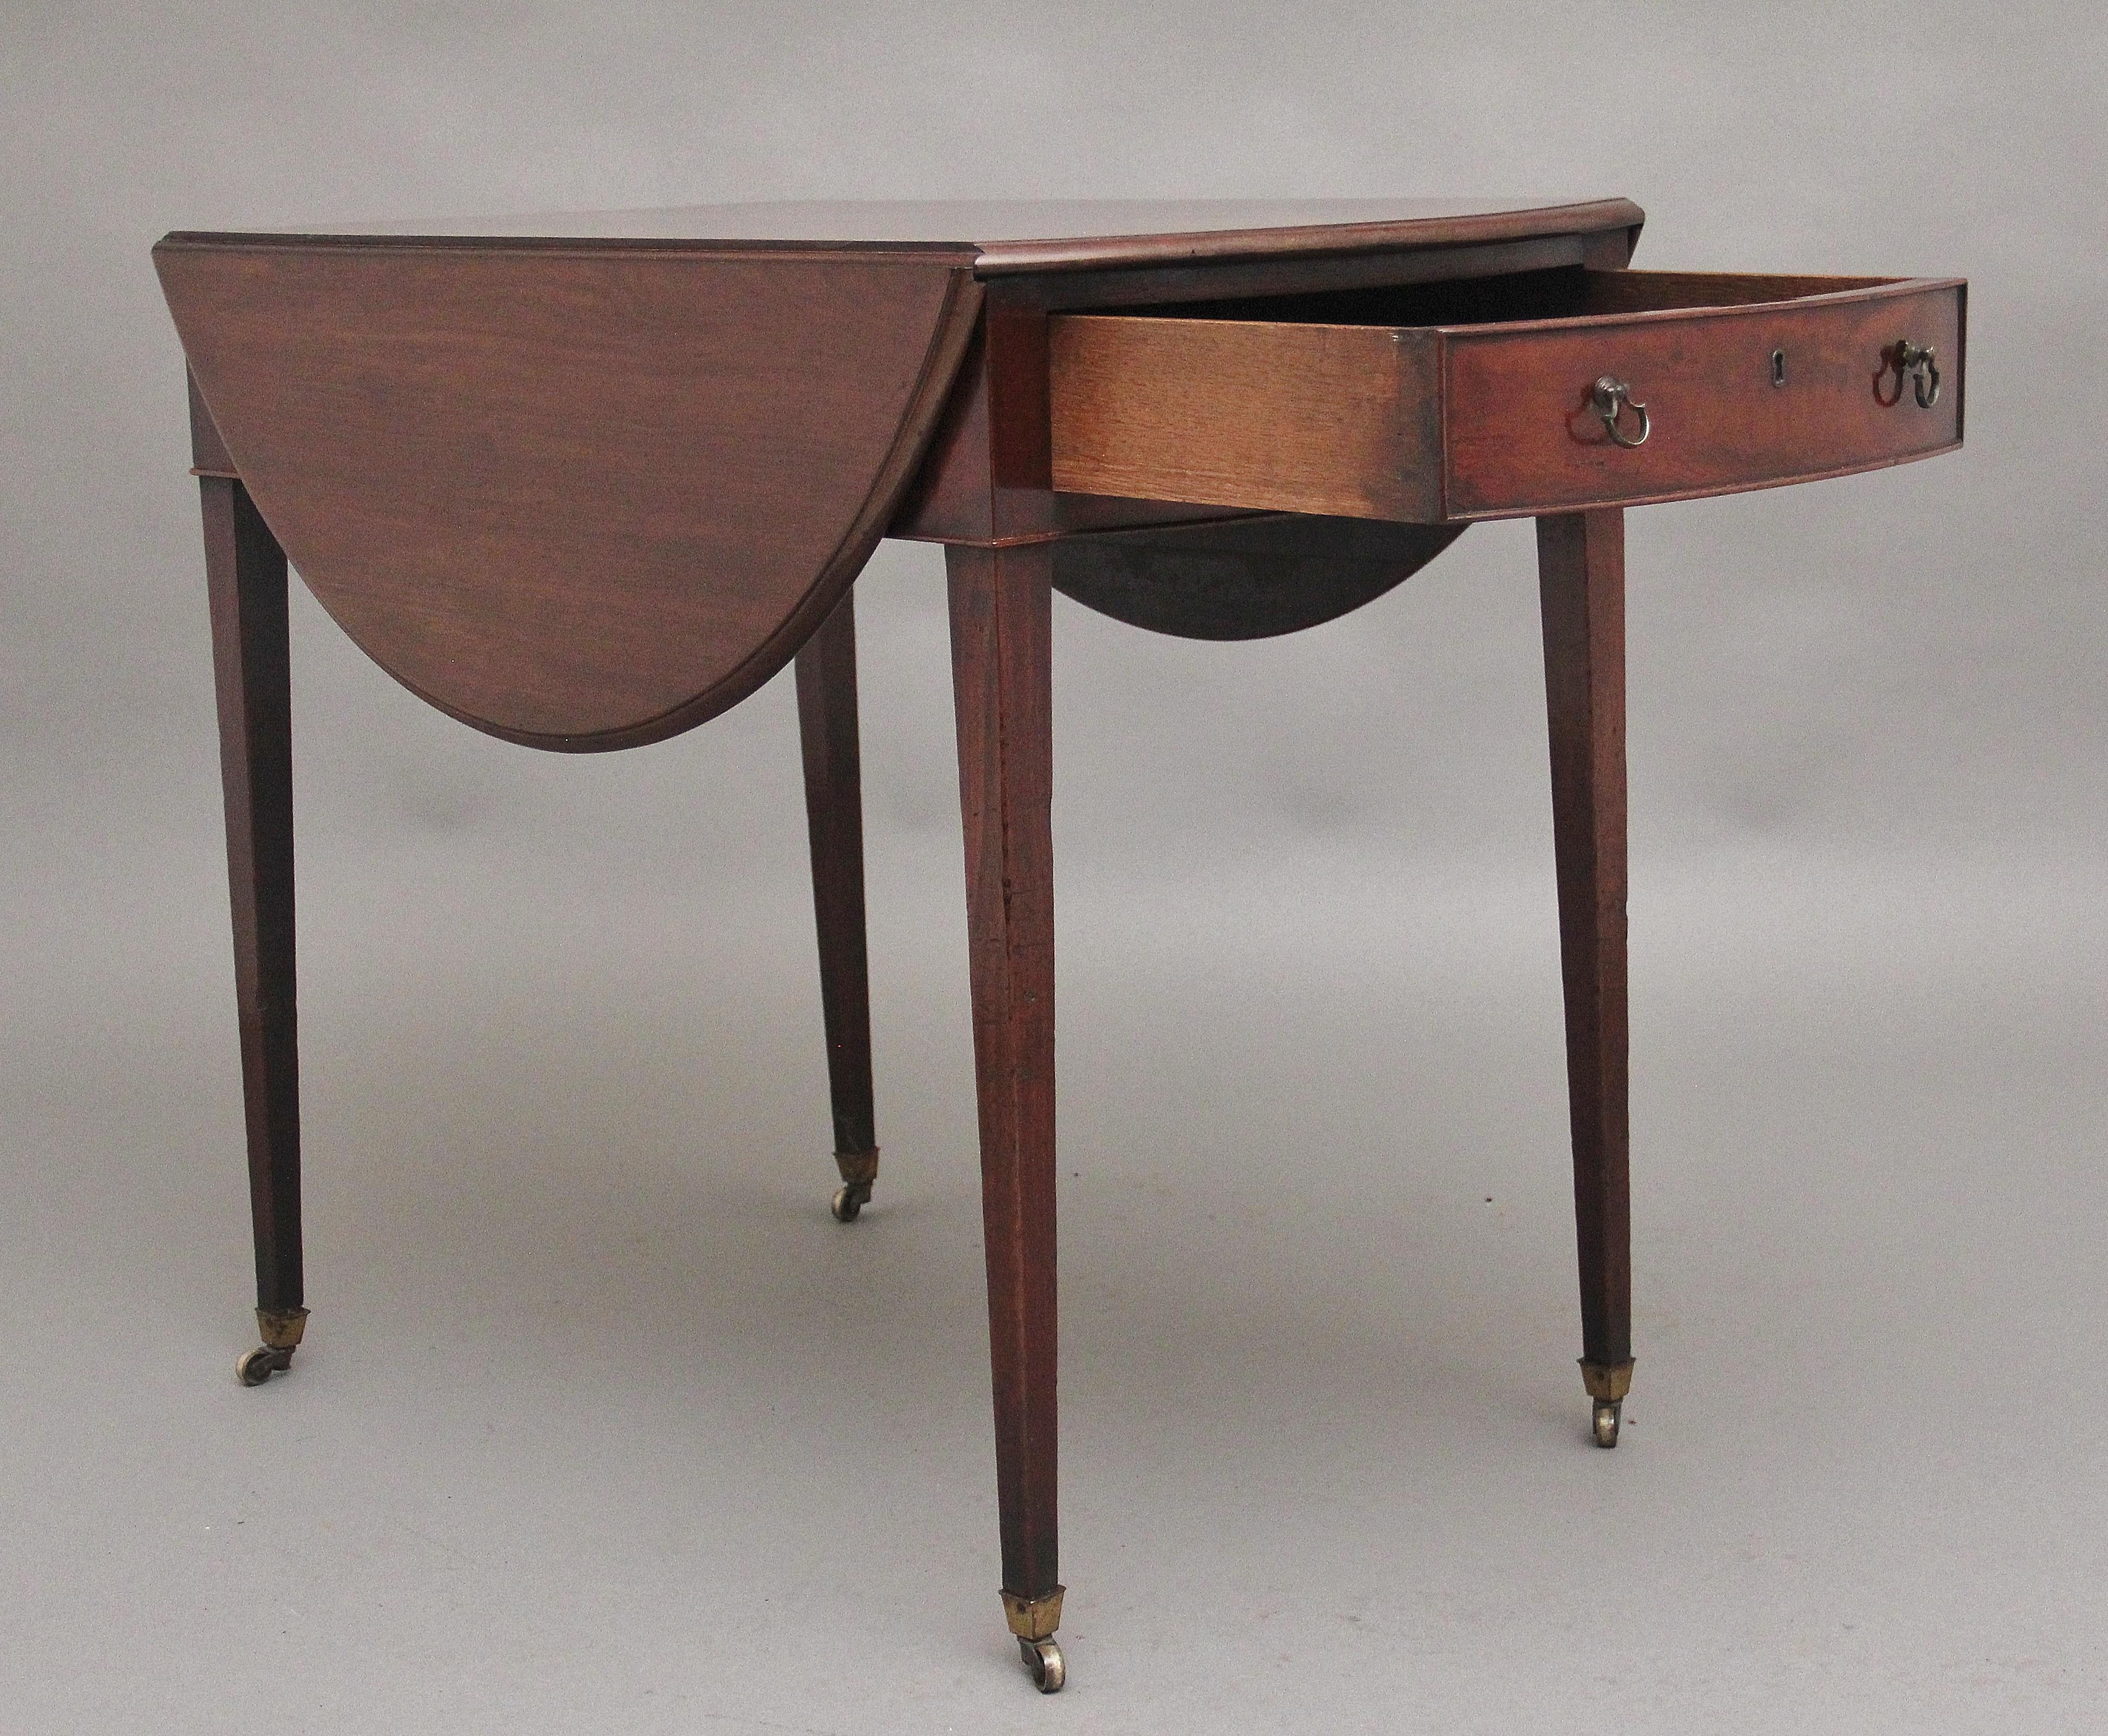 Eine fabelhafte Qualität frühen 18. Jahrhundert Mahagoni ovalen Pembroke Tisch, mit einem wunderbaren festen figürlichen oben mit einer geformten Kante, einzelne Eiche gefüttert Schublade an einem Ende mit Messingring Griffe, das andere Ende mit